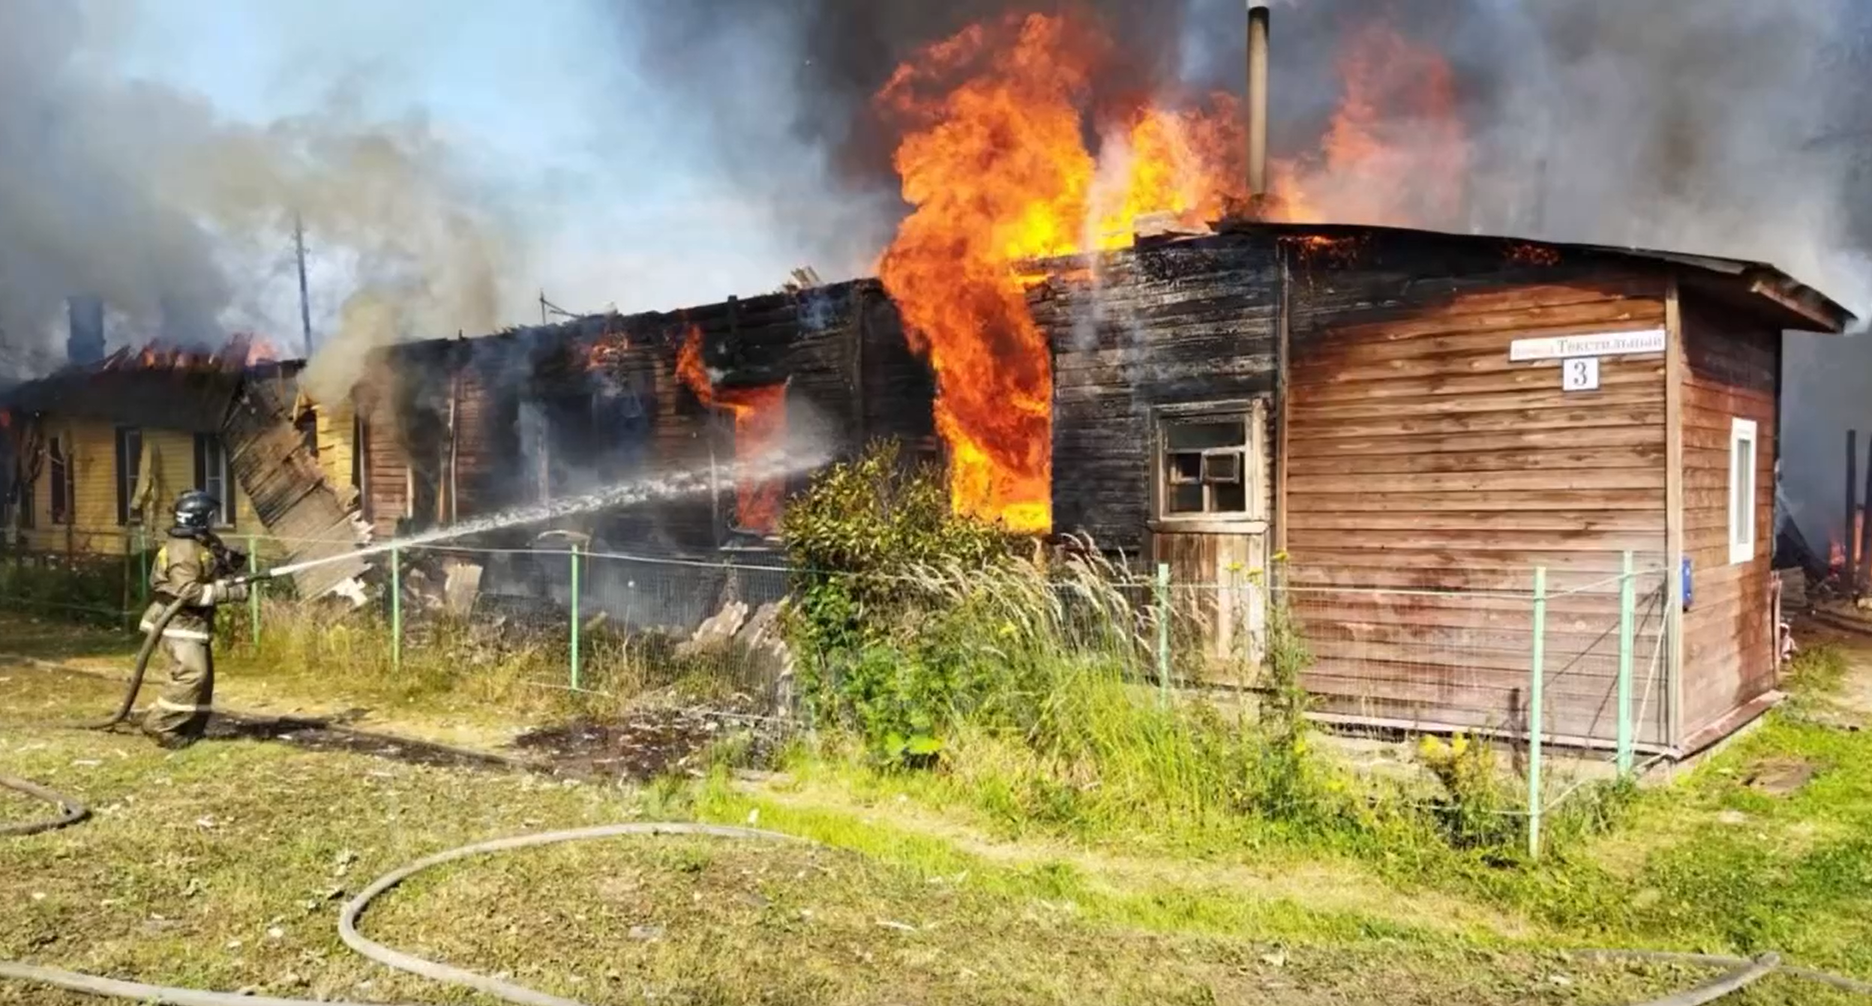 Прокуратура проводит проверку после пожара в многоквартирном доме в Иванове